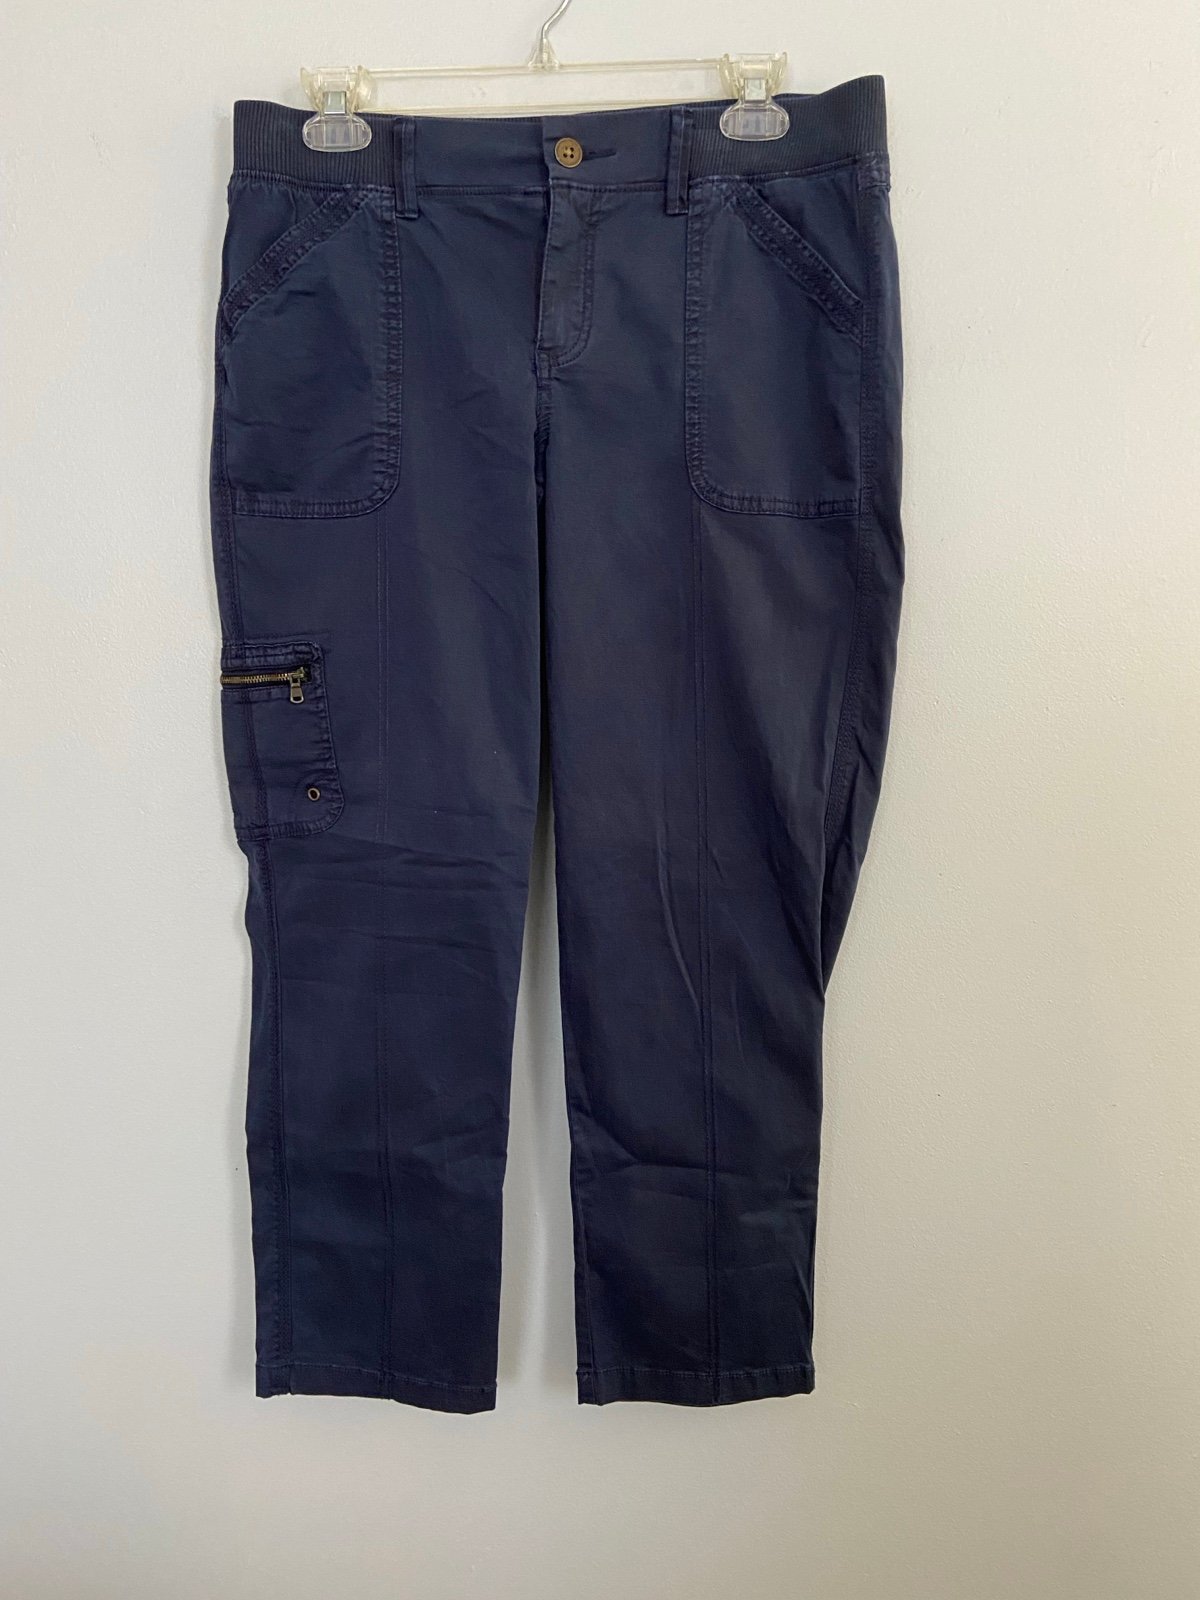 Wholesale price Sonoma Blue Cropped Cargo/Utility Pants LFsoyHFKZ Buying Cheap